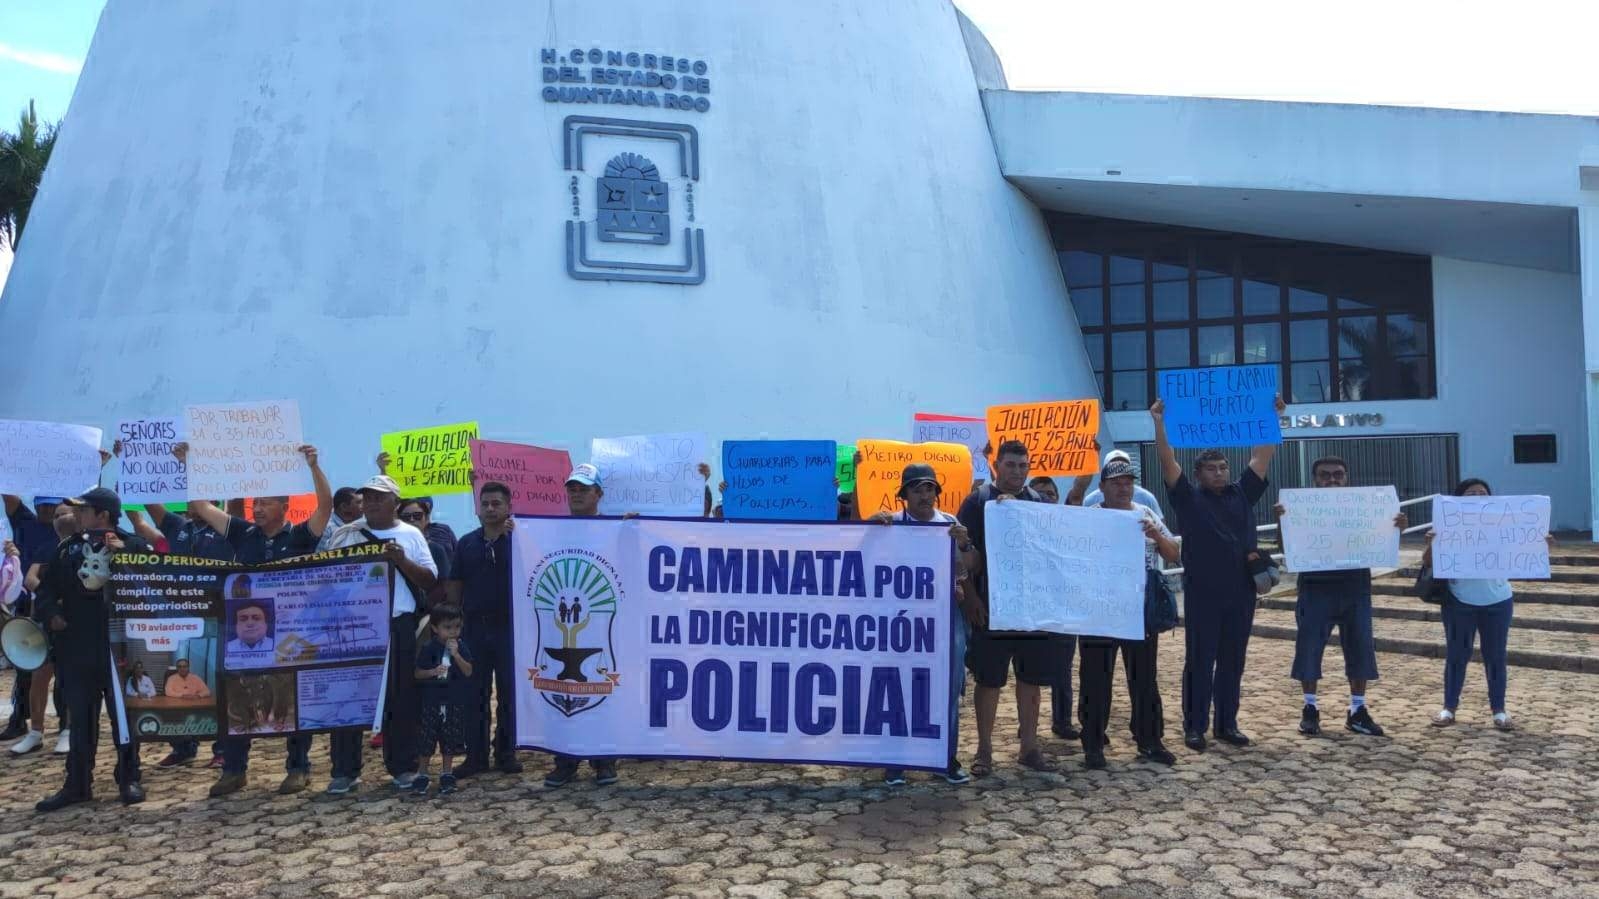 Policías de Chetumal exigen bajar la edad de jubilación a 25 años de servicio